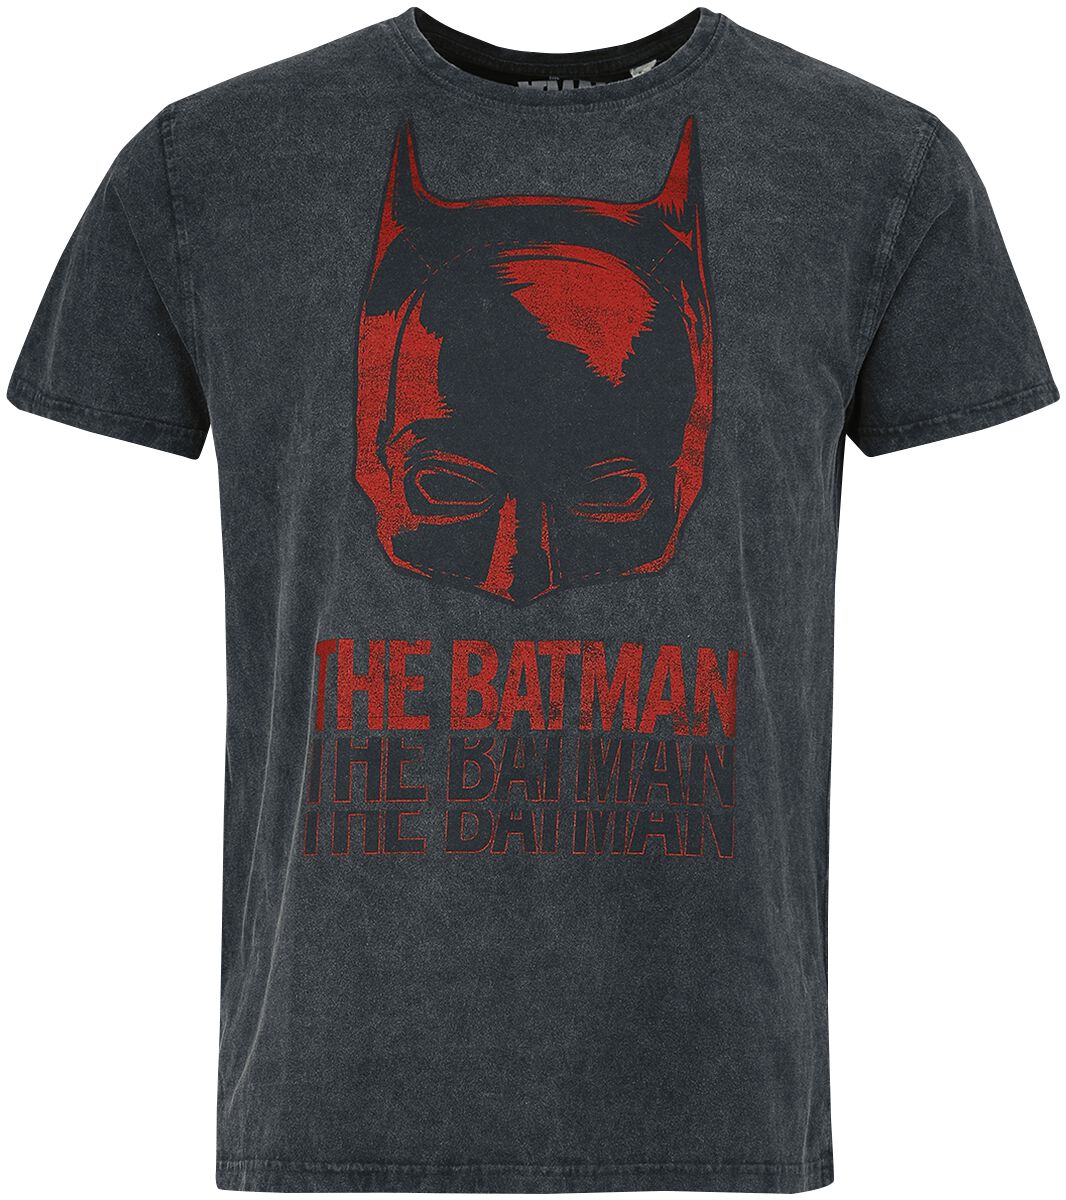 Batman - DC Comics T-Shirt - The Batman - Mask - S bis XXL - für Männer - Größe S - schwarz  - Lizenzierter Fanartikel von Batman